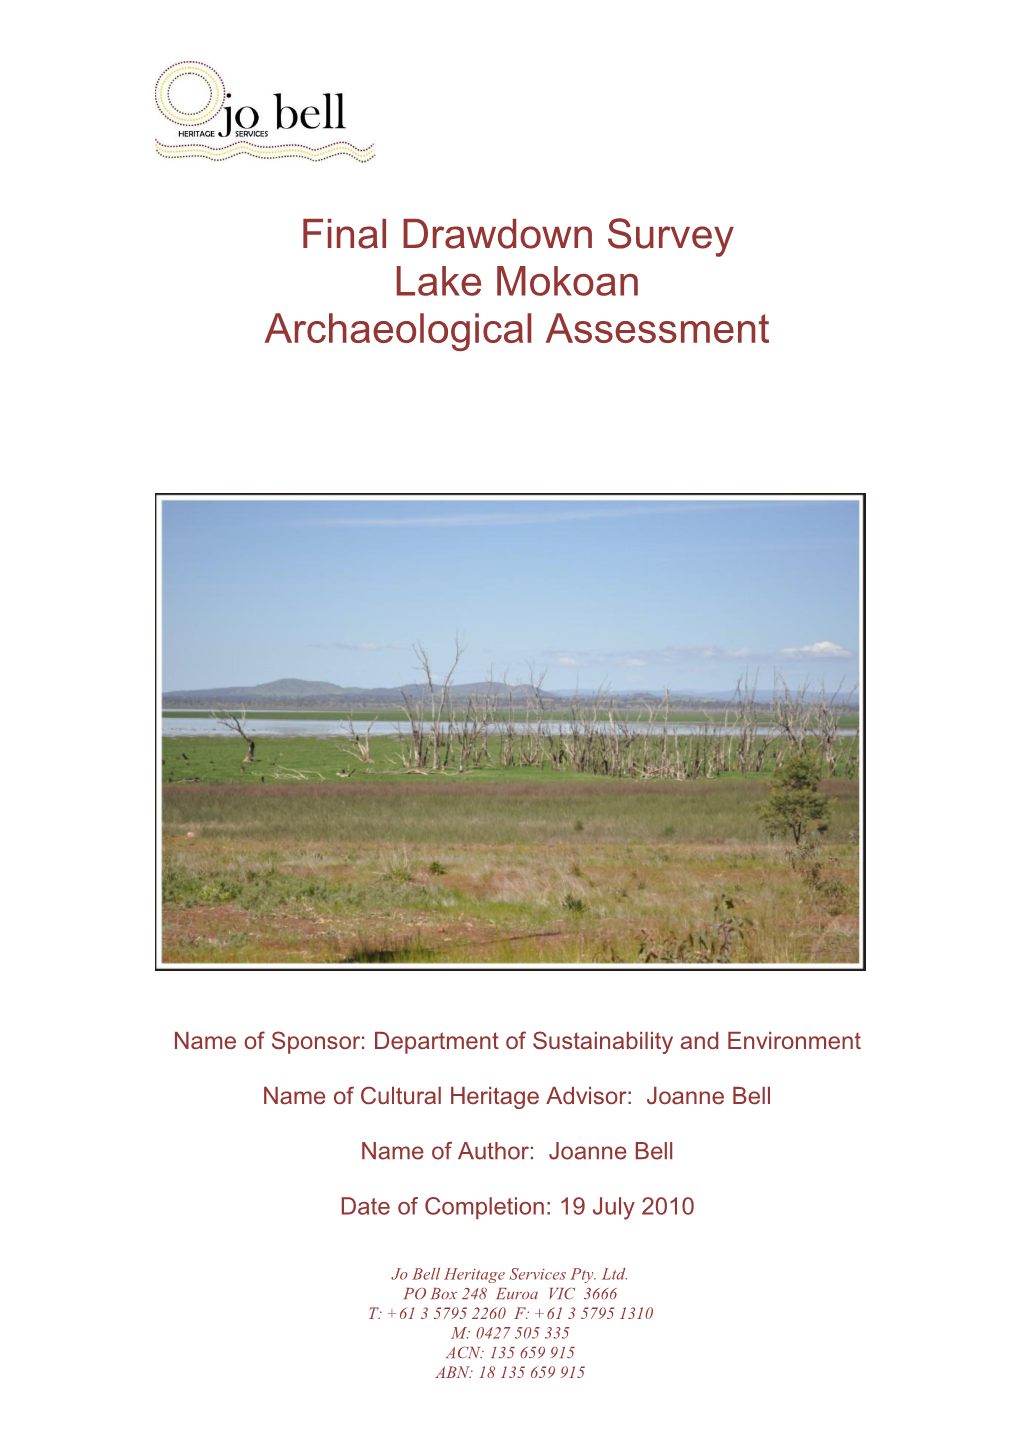 Final Drawdown Survey Lake Mokoan Archaeological Assessment